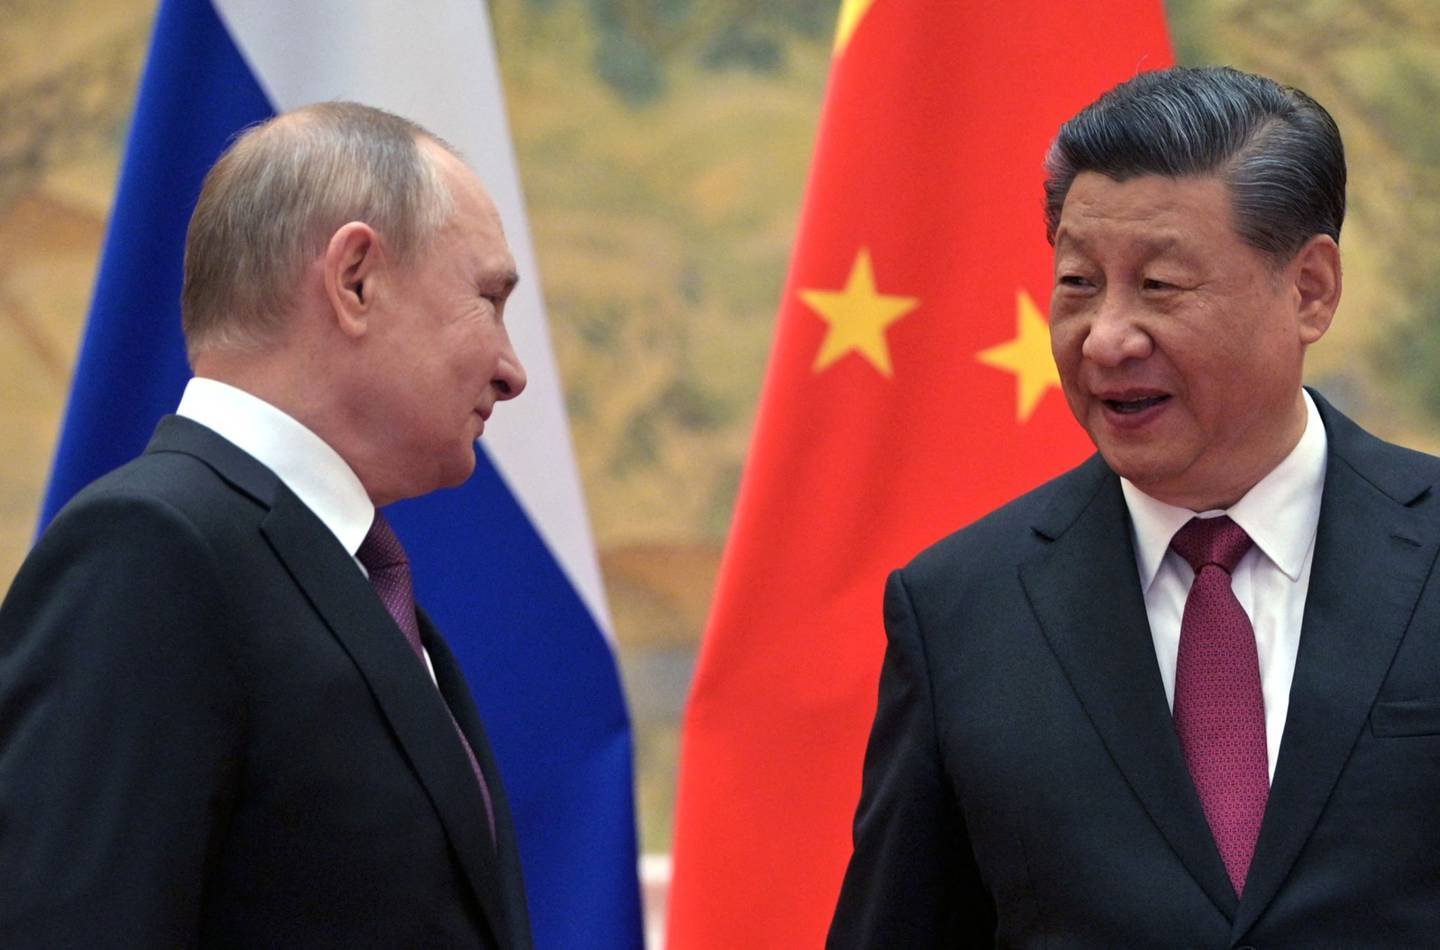 El presidente ruso Vladimir Putin (izq.) y el presidente chino Xi Jinping posan para una fotografía durante su reunión en Pekín, el 4 de febrero de 2022.  Fotógrafo: Alexei Druzhinin